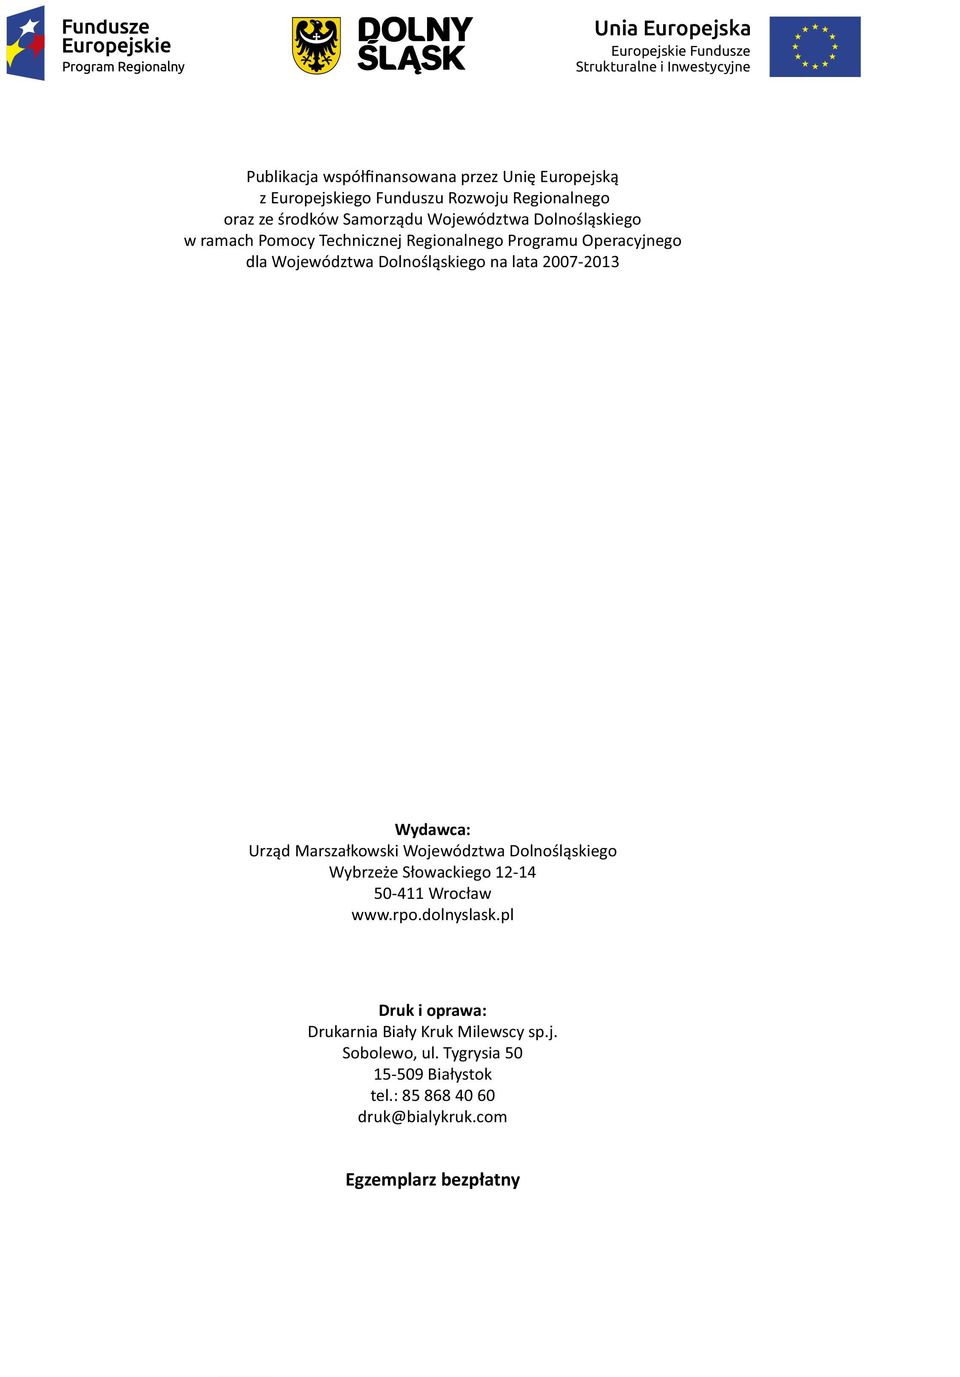 Dolnośląskiego na lata 2007-2013 Wydawca: Urząd Marszałkowski Województwa Dolnośląskiego Wybrzeże Słowackiego 12-14 50-411 Wrocław www.rpo.dolnyslask.